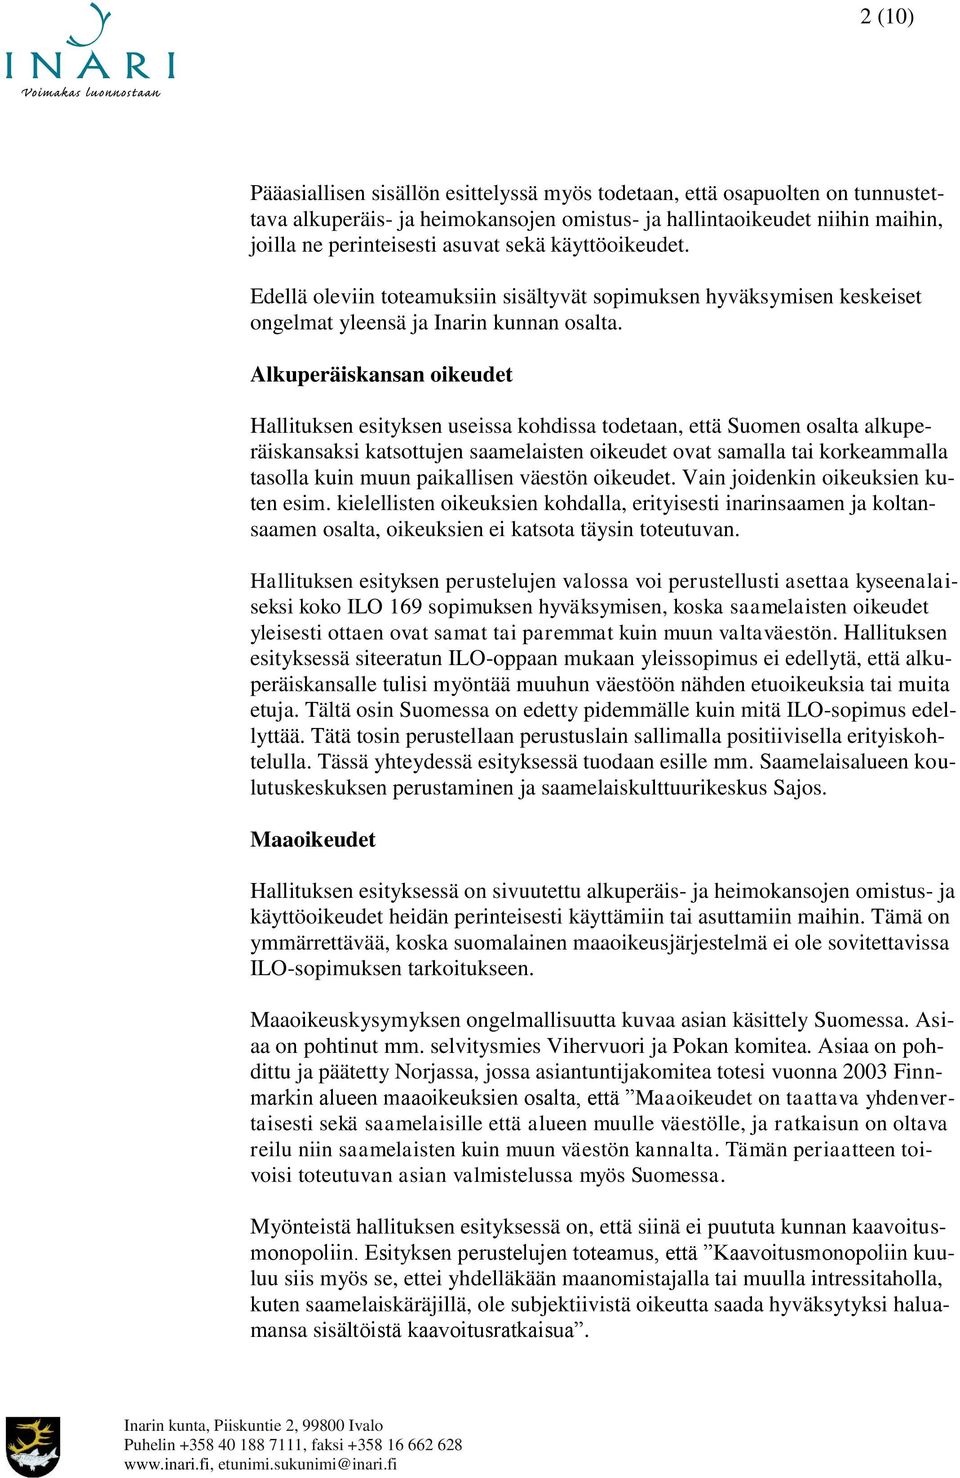 Alkuperäiskansan oikeudet Hallituksen esityksen useissa kohdissa todetaan, että Suomen osalta alkuperäiskansaksi katsottujen saamelaisten oikeudet ovat samalla tai korkeammalla tasolla kuin muun